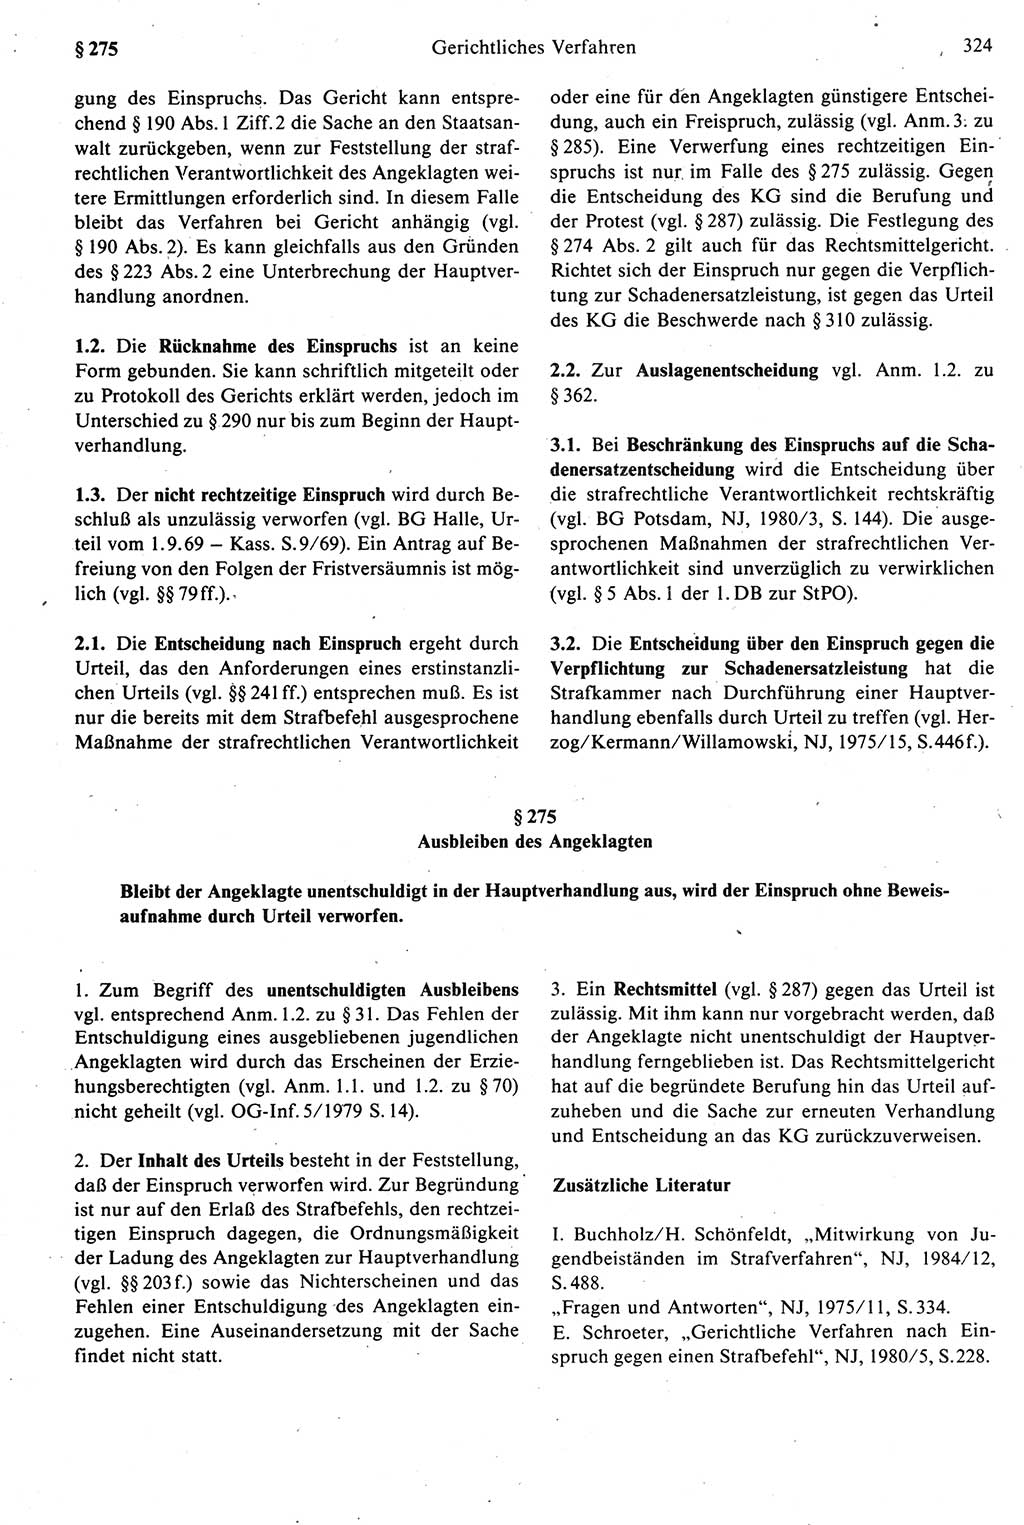 Strafprozeßrecht der DDR [Deutsche Demokratische Republik], Kommentar zur Strafprozeßordnung (StPO) 1987, Seite 324 (Strafprozeßr. DDR Komm. StPO 1987, S. 324)